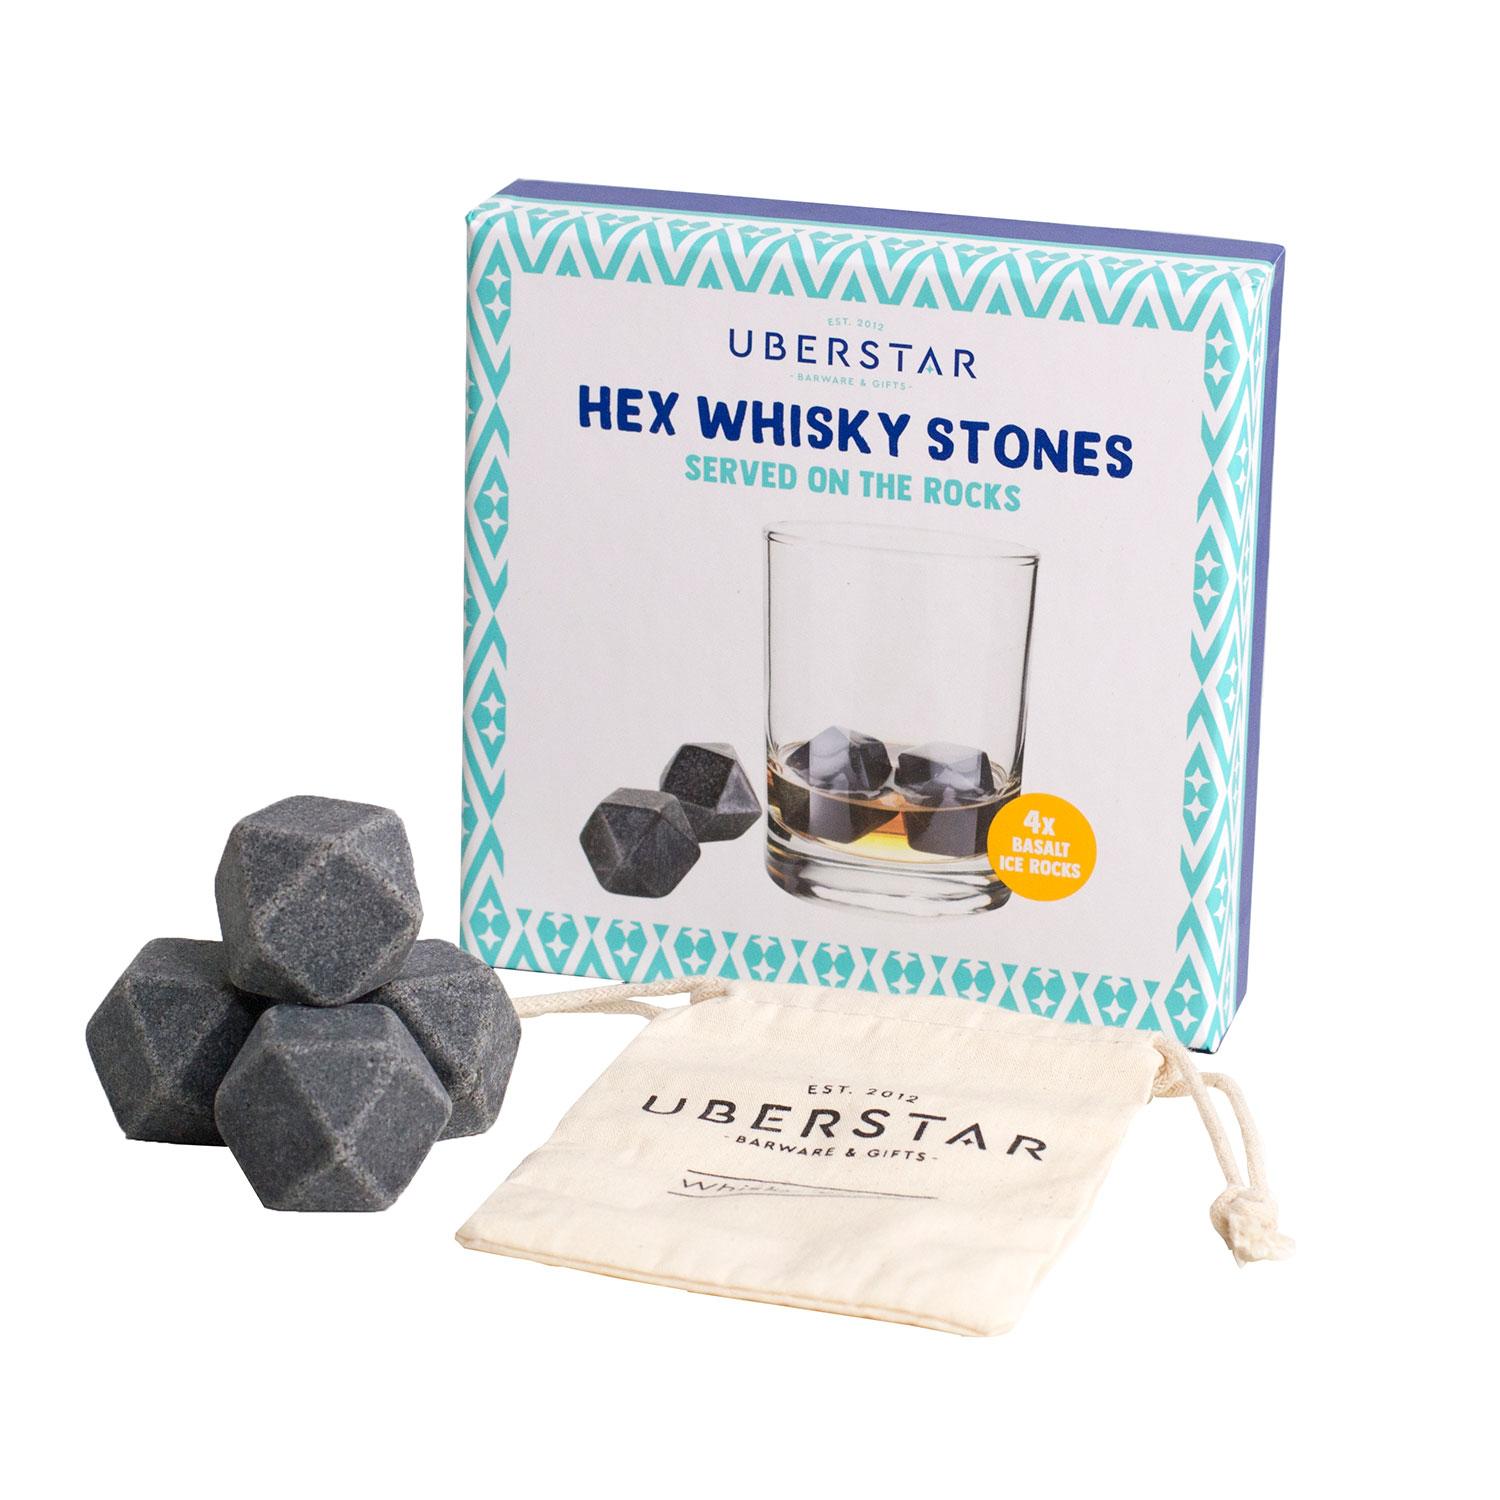 Uberstar Hex Whisky Stones - 4x Basalt Stones & Cotton Bag